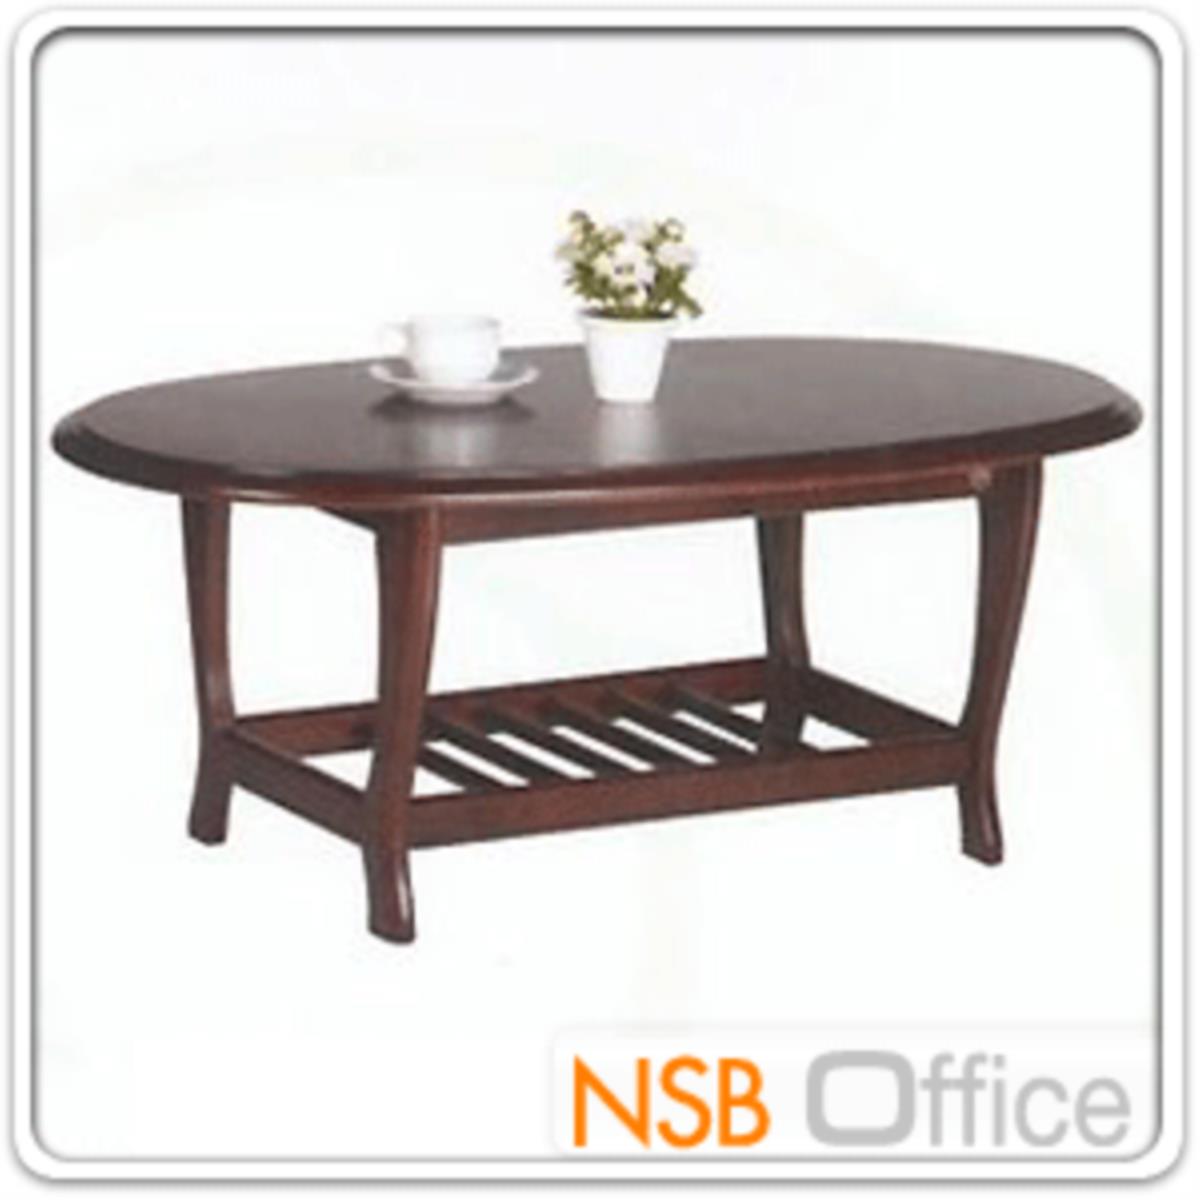 โต๊ะกลางไม้ยางพาราทรงวงรี  รุ่น Northcote (นอร์ทโคท) ขนาด 105W cm. 